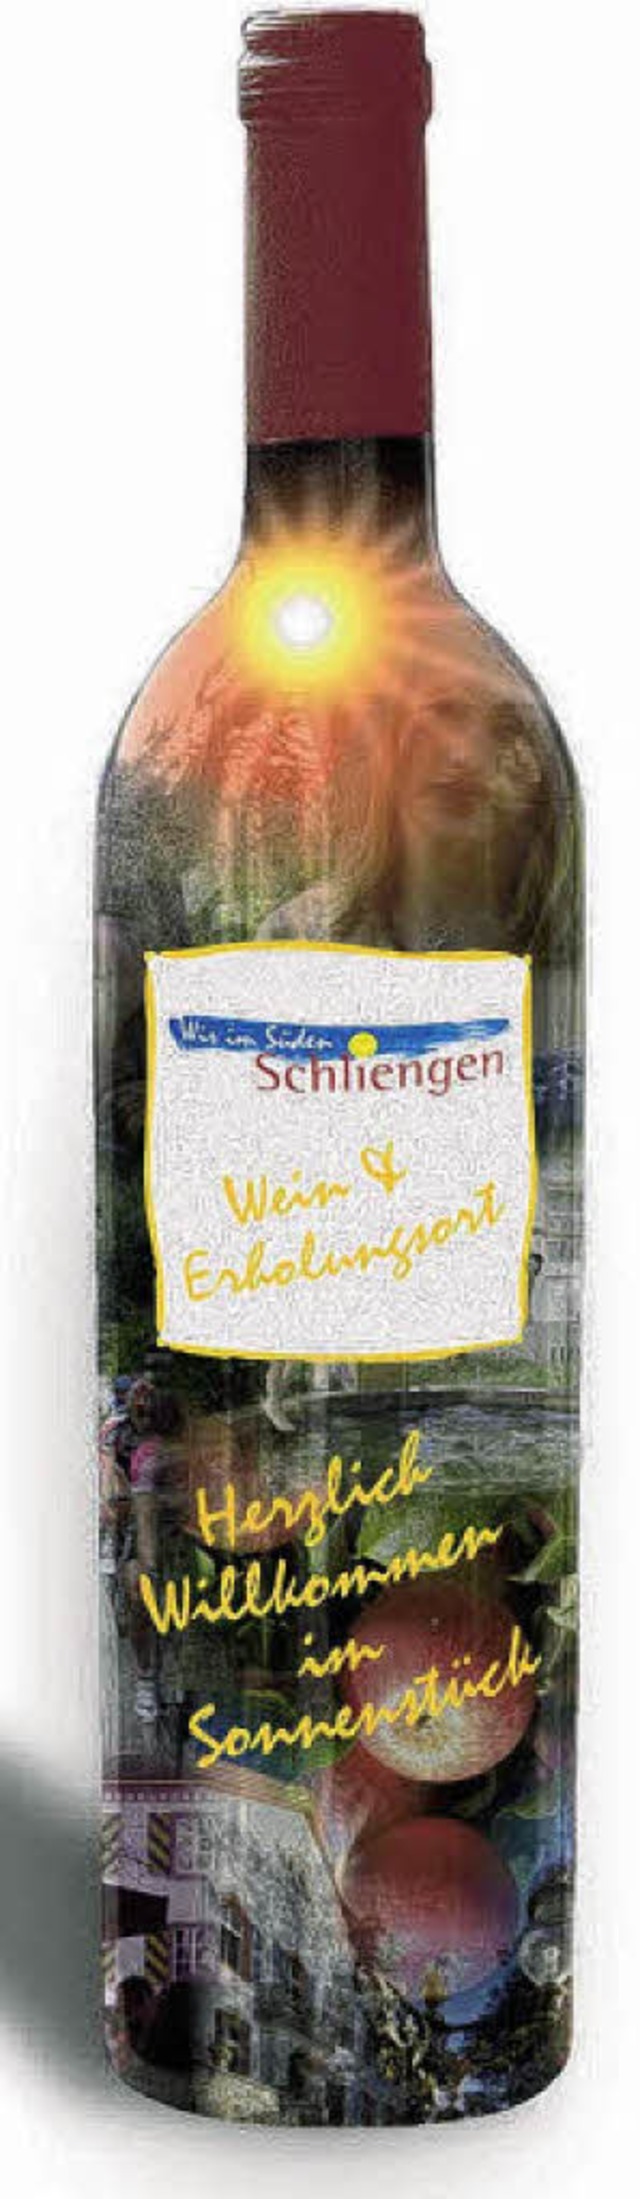 Der &#8222;Wein-Erholungsort&#8220; wi...neues Wahrzeichen im August bekommen.   | Foto: Schliengen